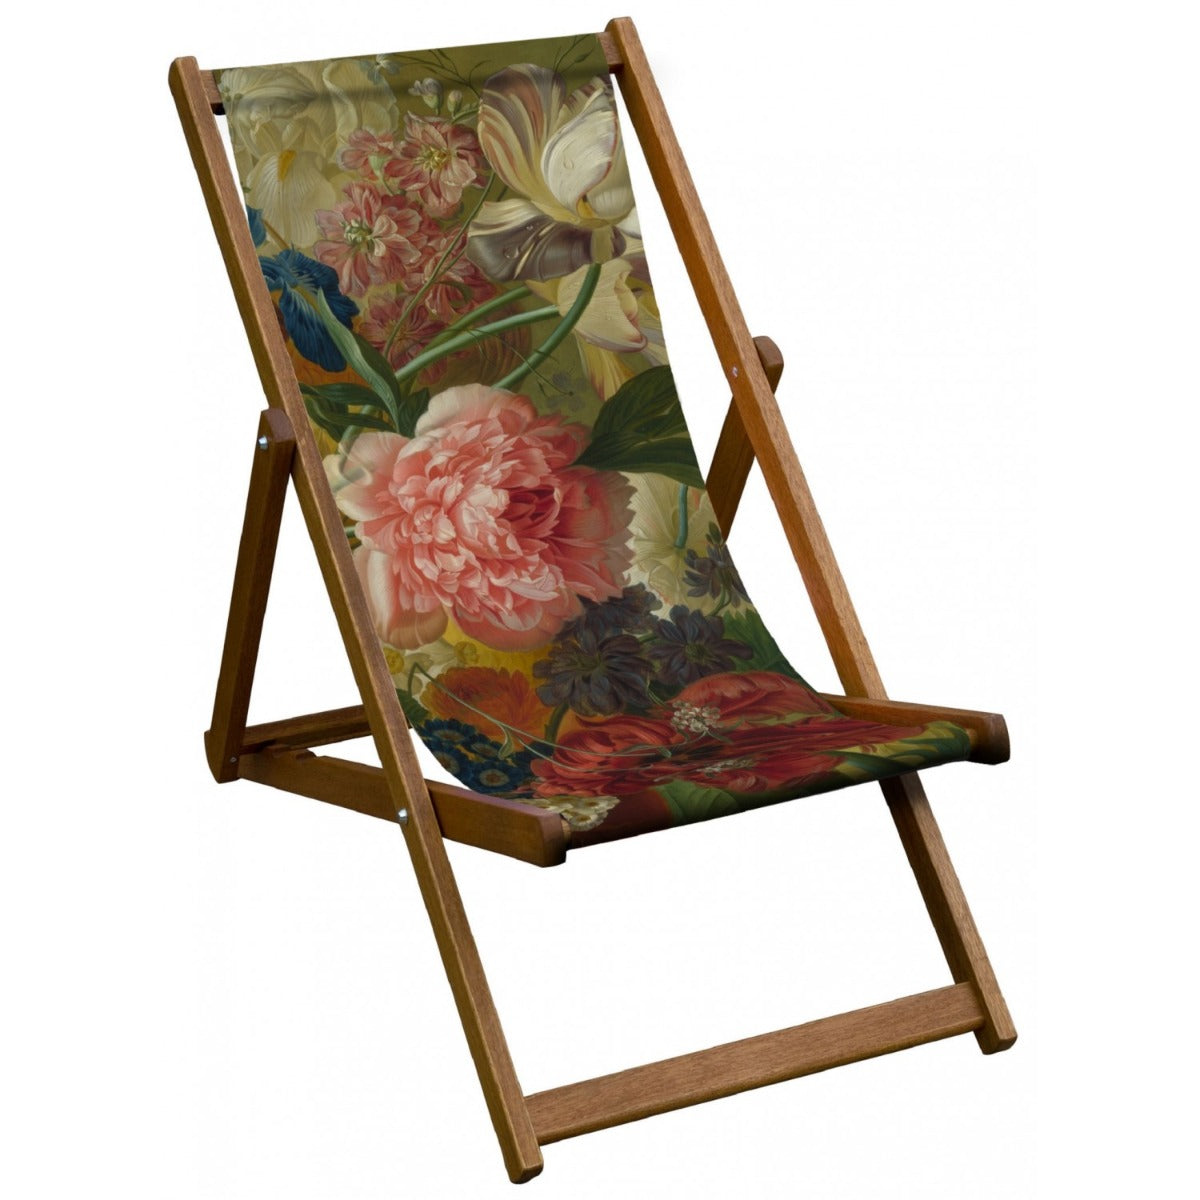 Vintage Inspired Wooden Deckchair- Flowers in a Vase Detail Pink Rose - van Brussell